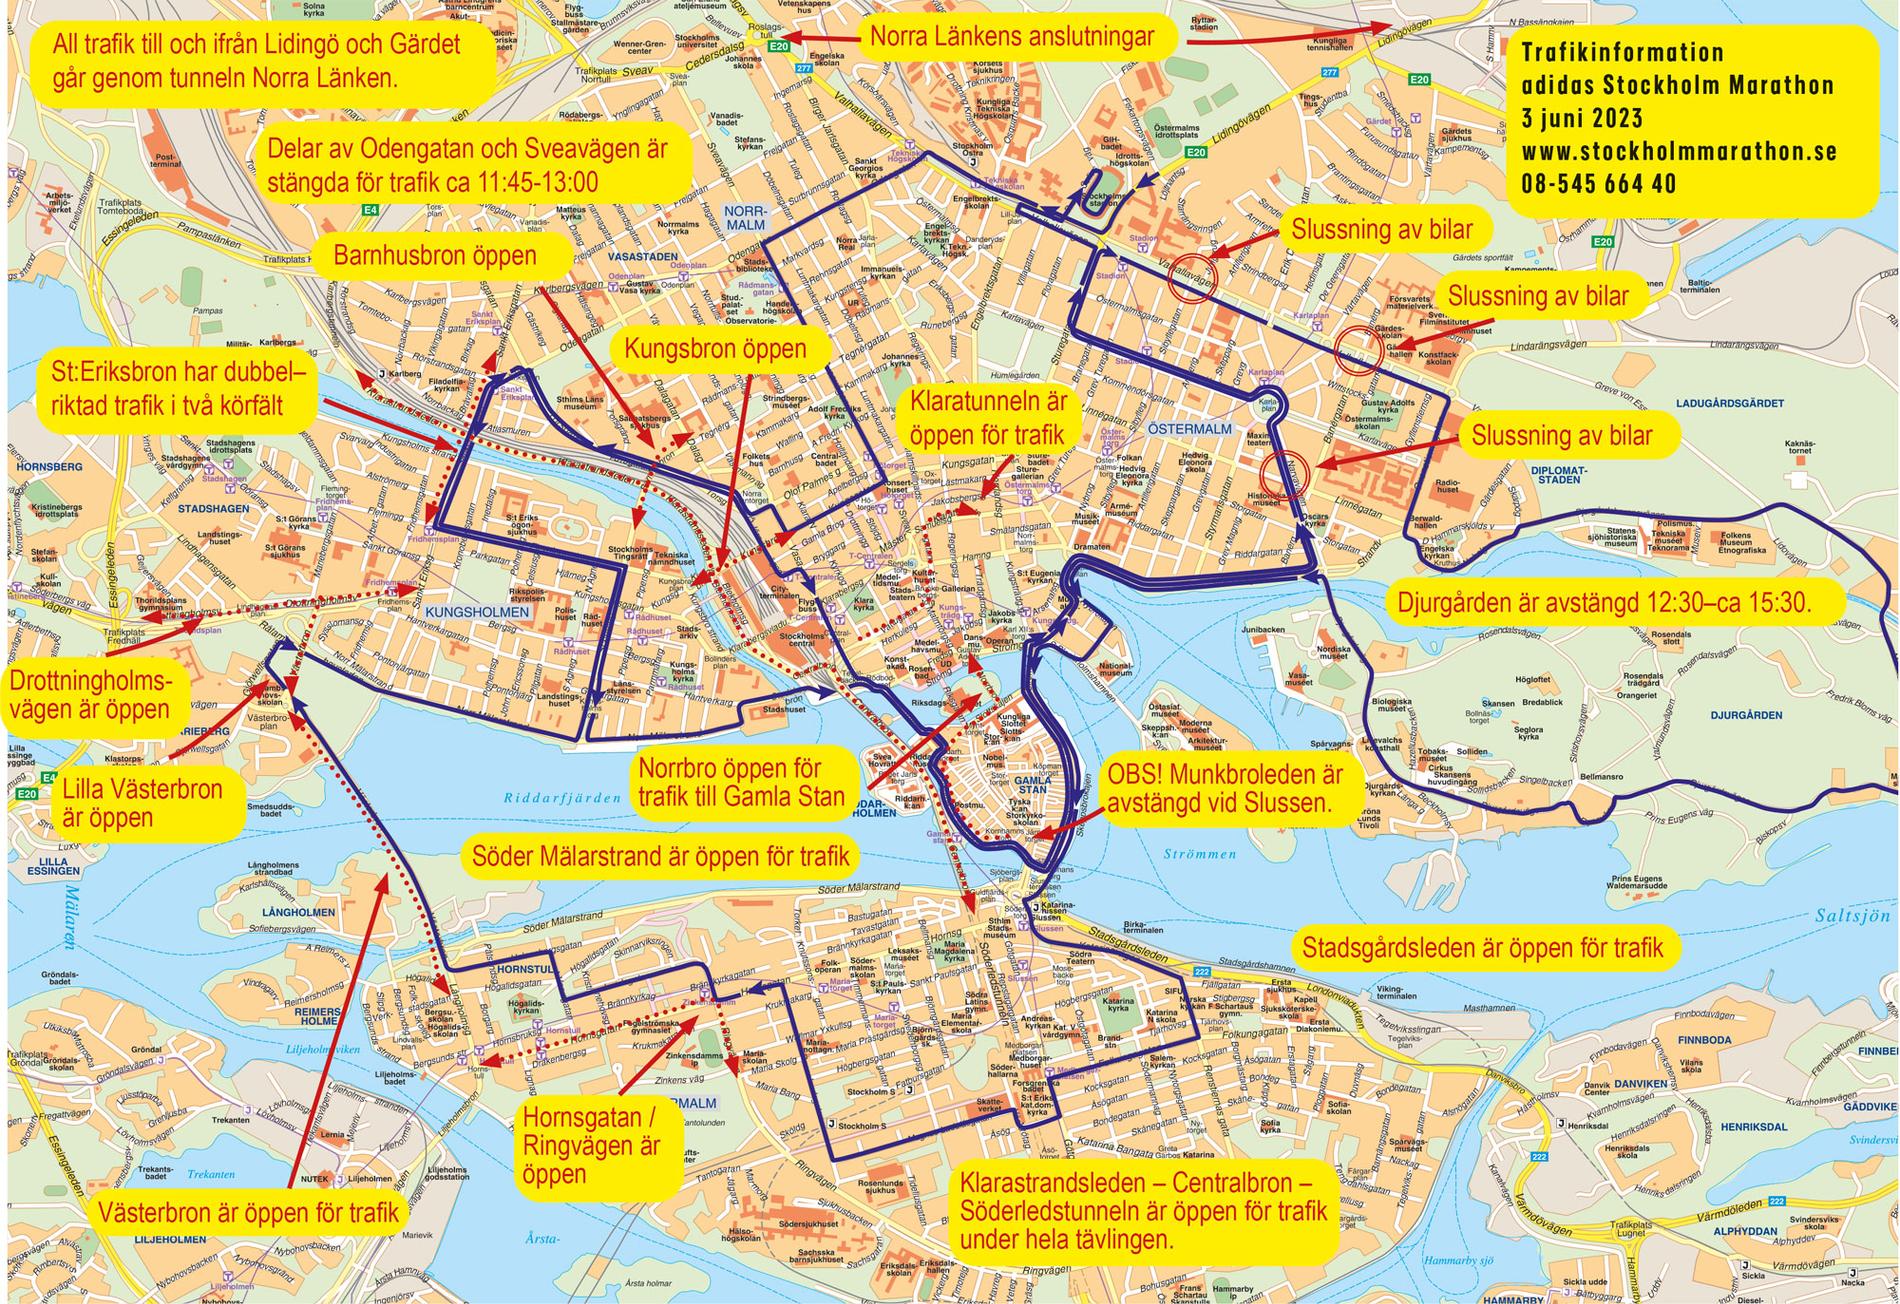 Trafikinfo under Stockholm Marathon 2023